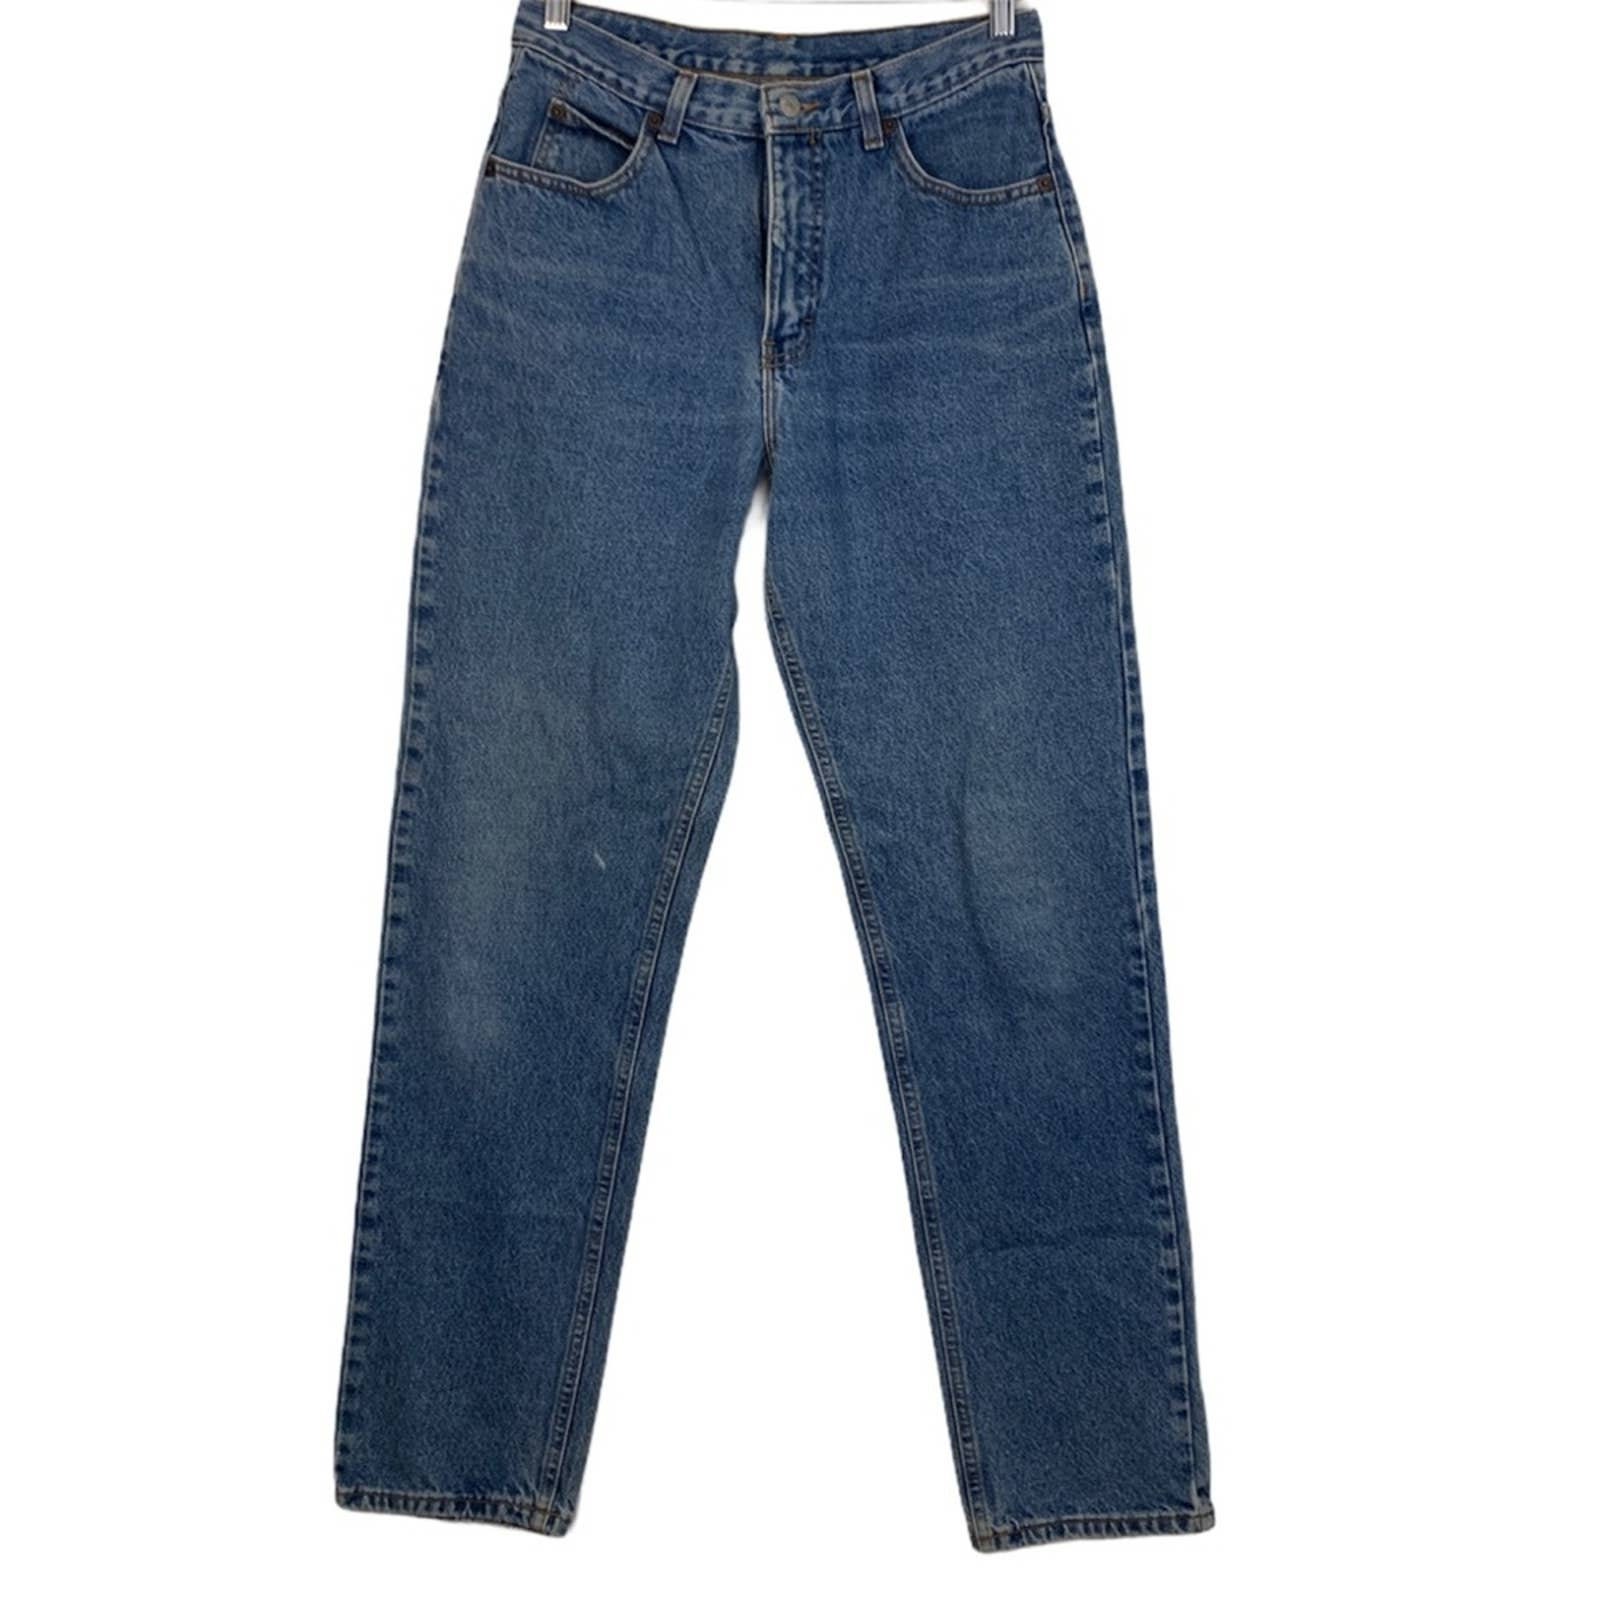 Vintage Made Calvin Klein Jeans waist 29 - Etsy